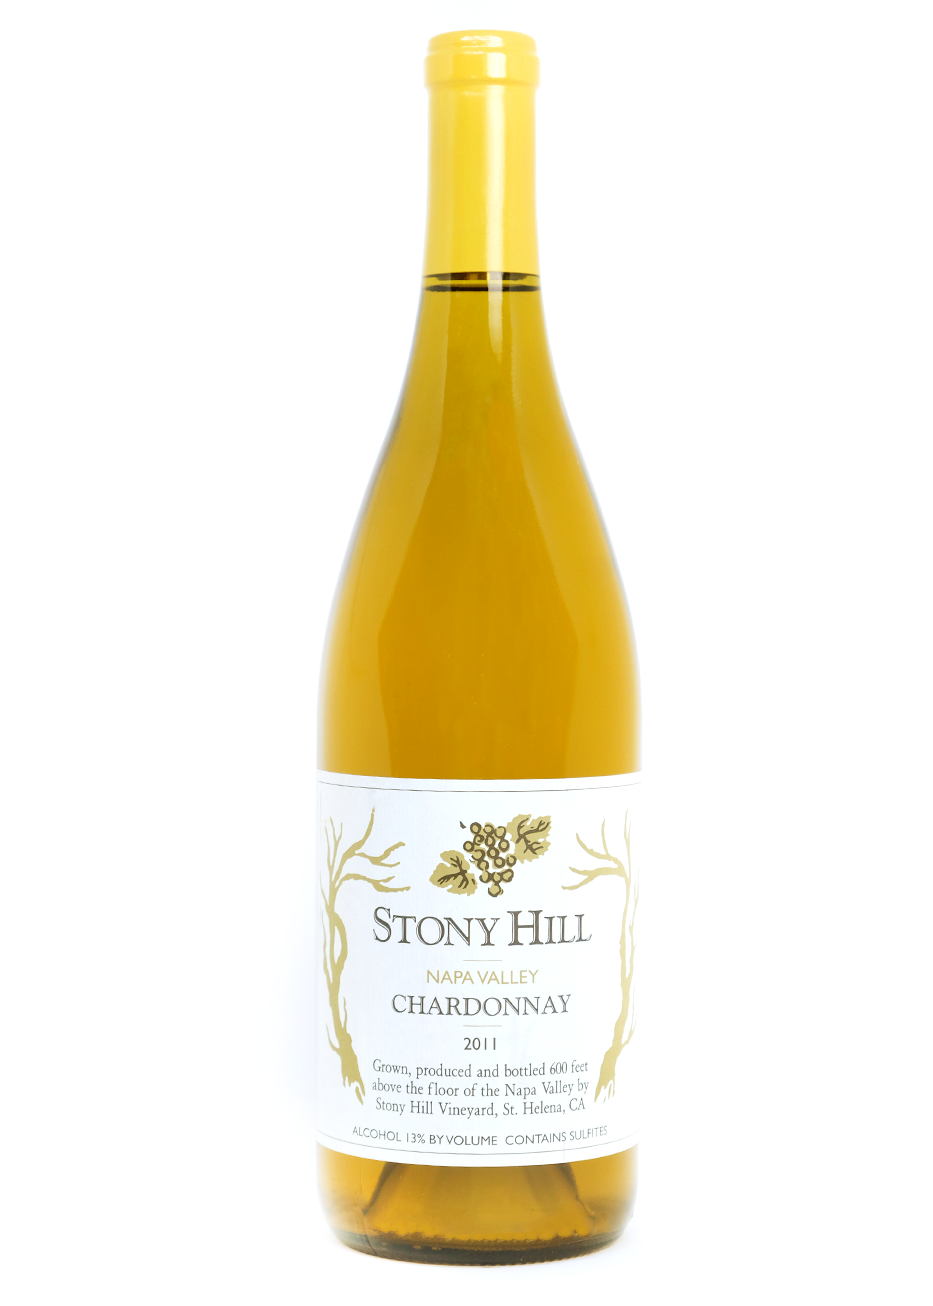 Stony Hill 2010 Chardonnay